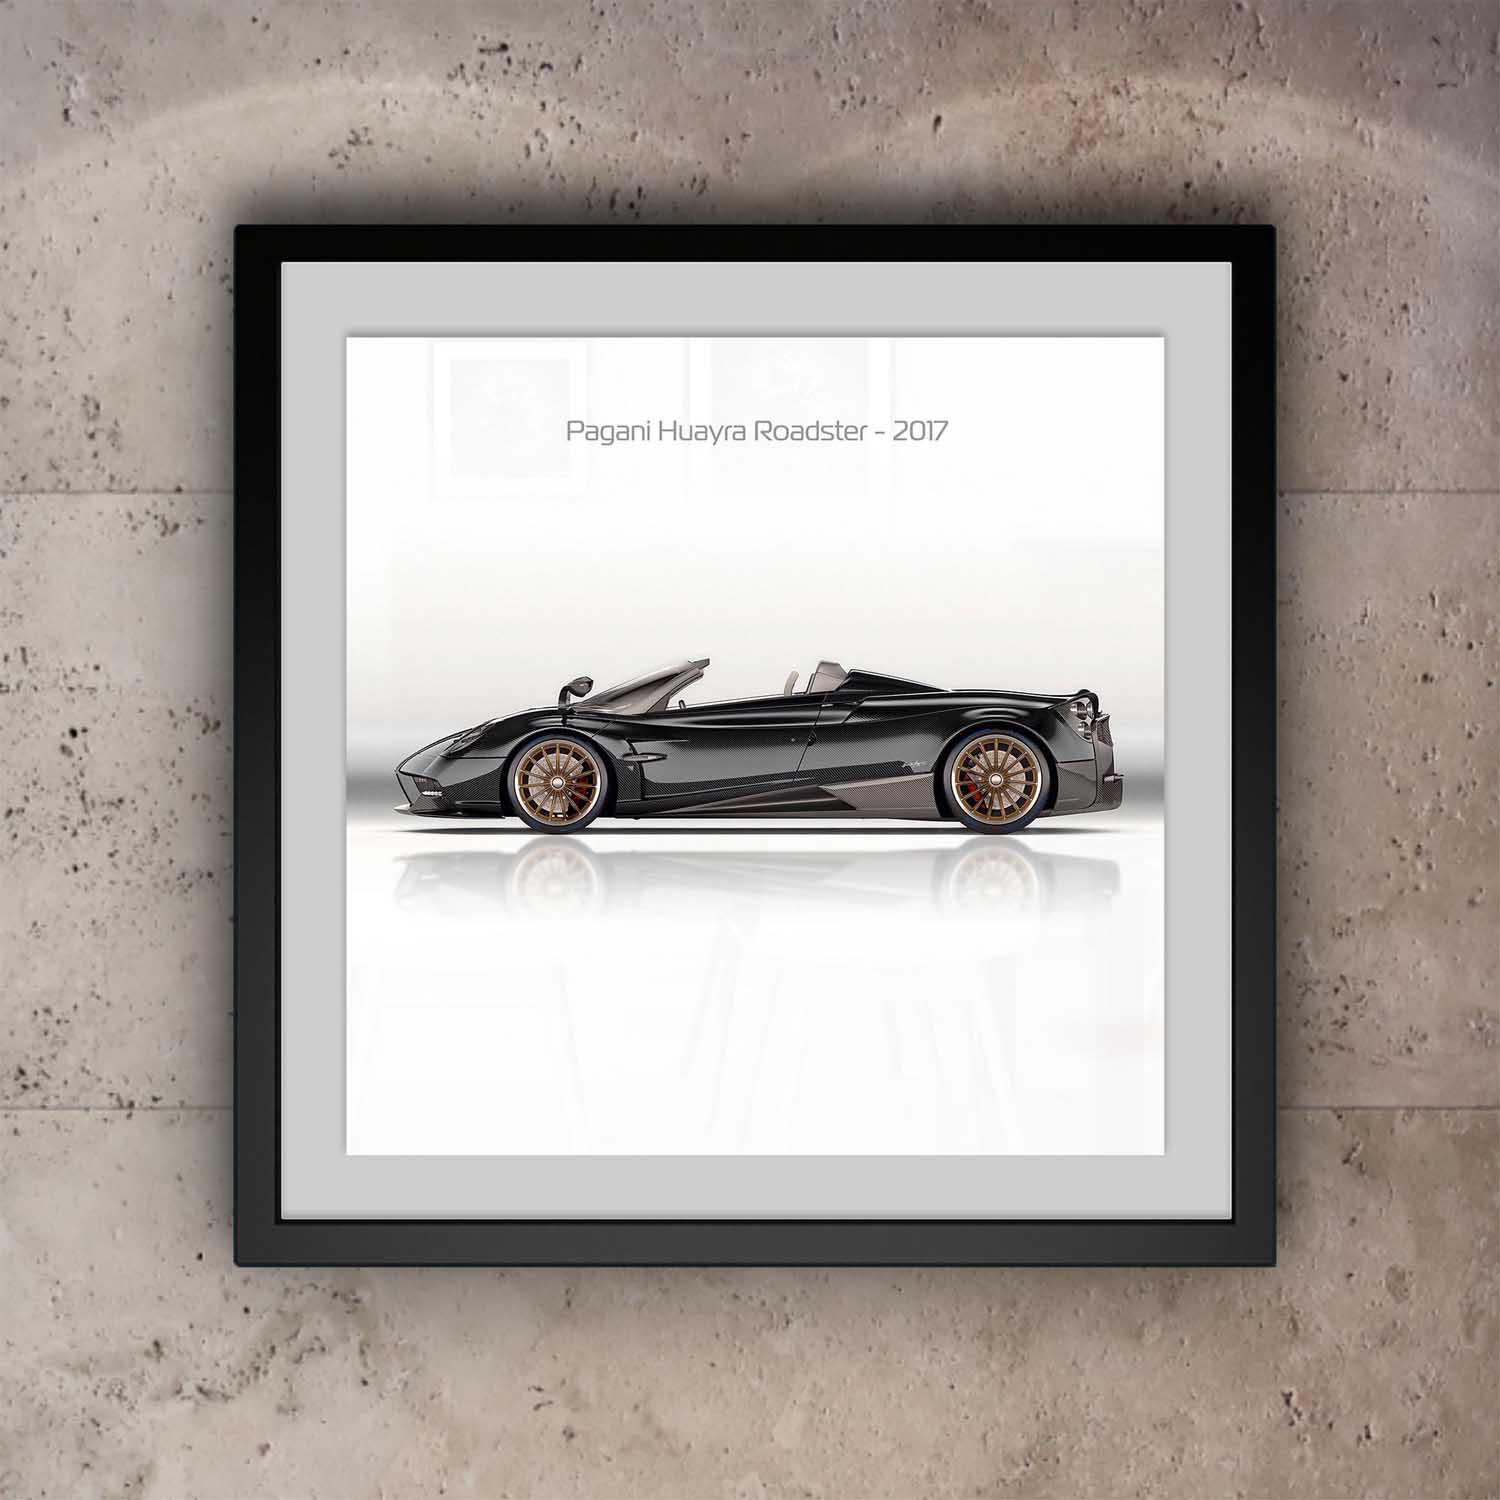 Pagani Huayra Roadster Print - Side